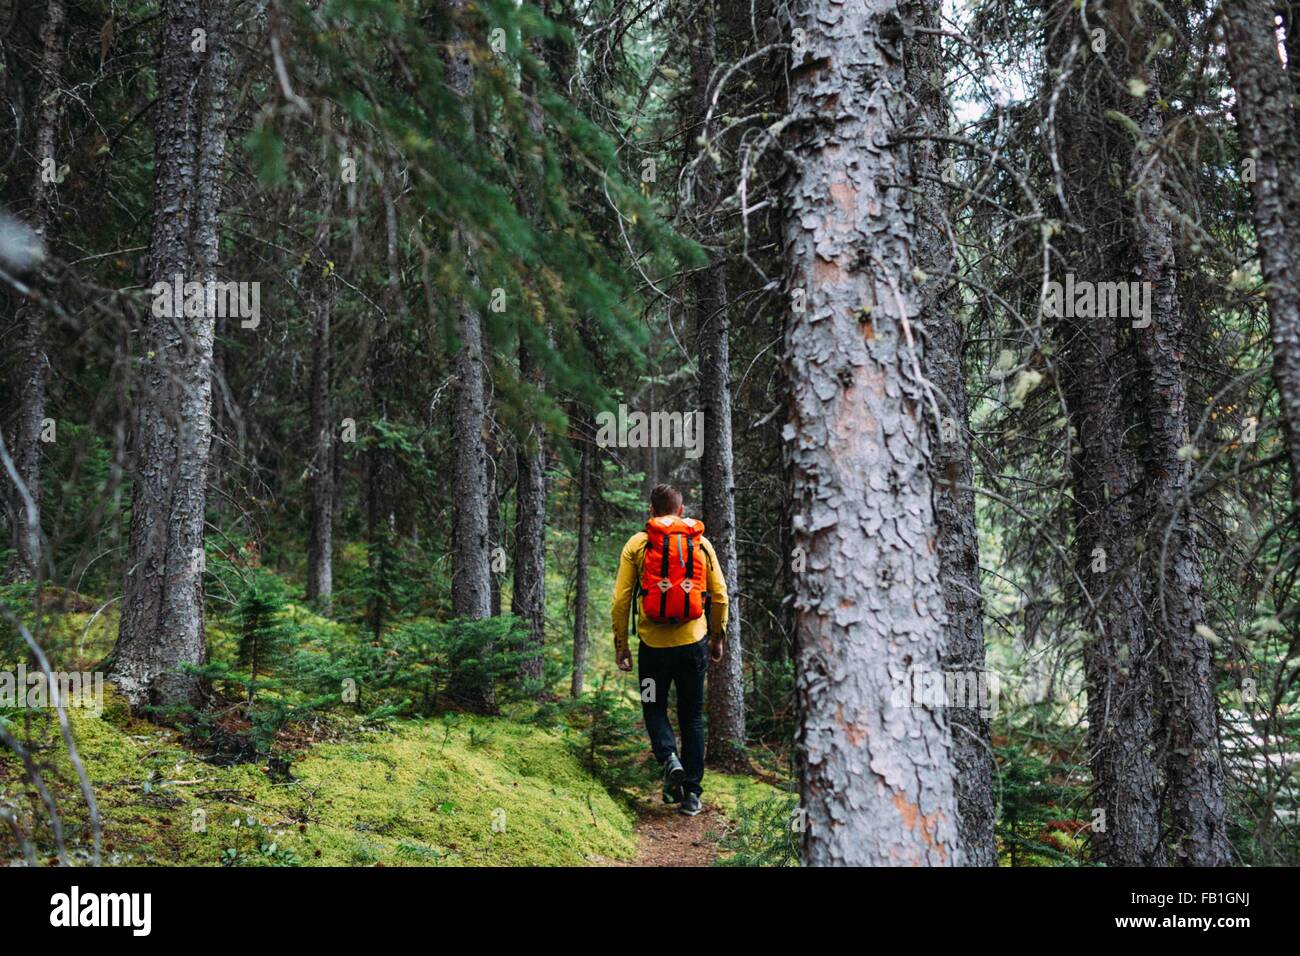 Vue arrière du Mid adult man sac à dos orange trekking à travers la forêt, lac Moraine, parc national Banff, Alberta Canada Banque D'Images